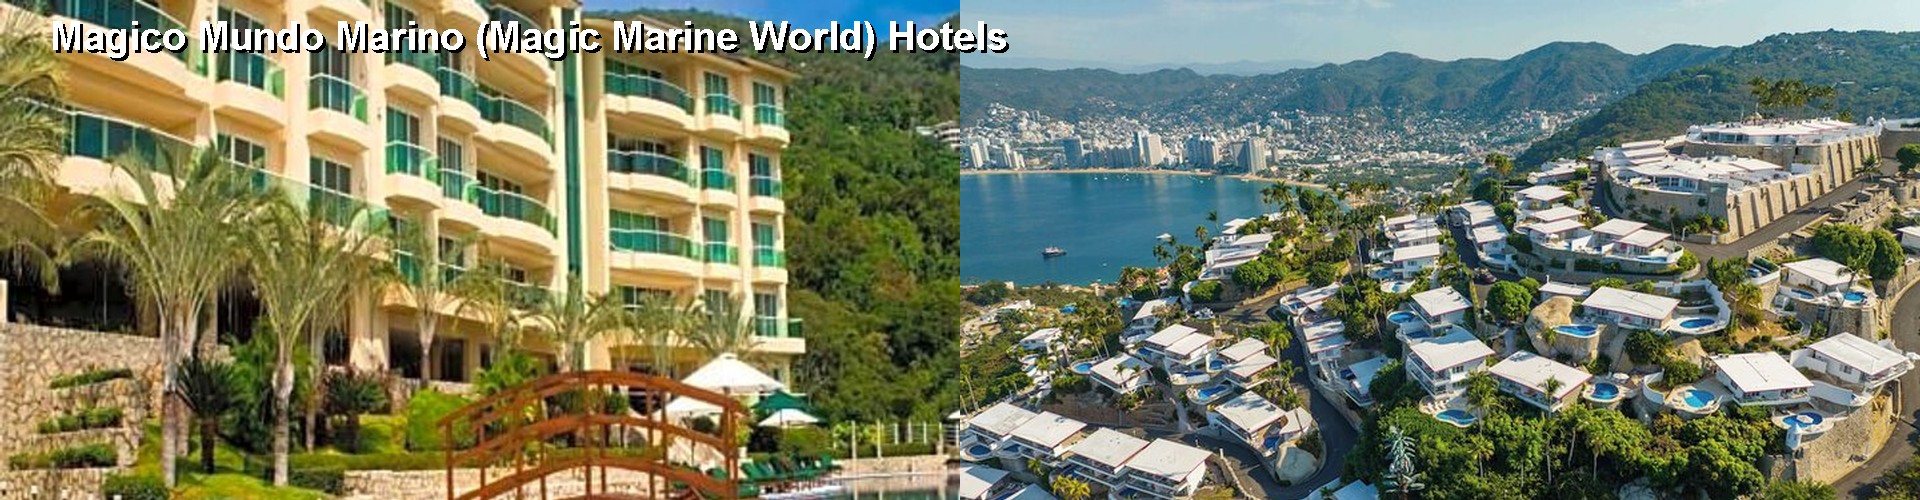 5 Best Hotels near Magico Mundo Marino (Magic Marine World)